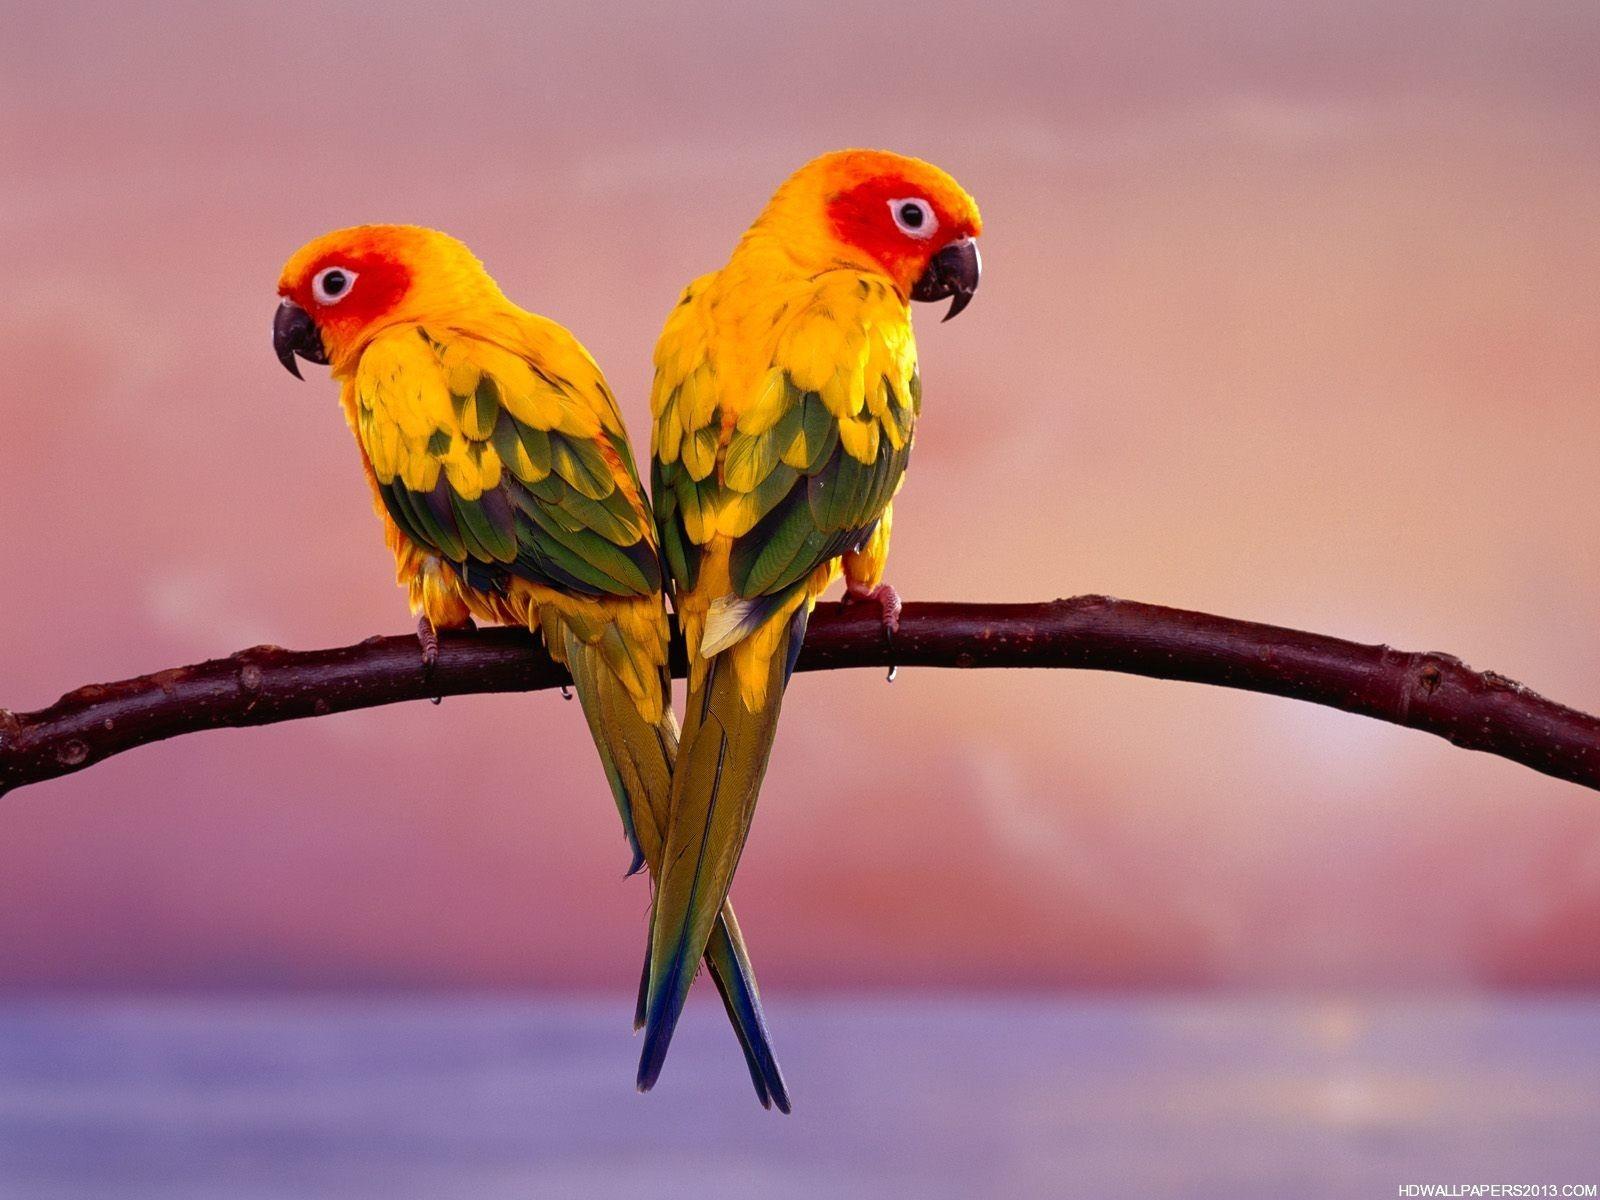 Beautiful Birds Wallpaper. High Definition Wallpaper, High